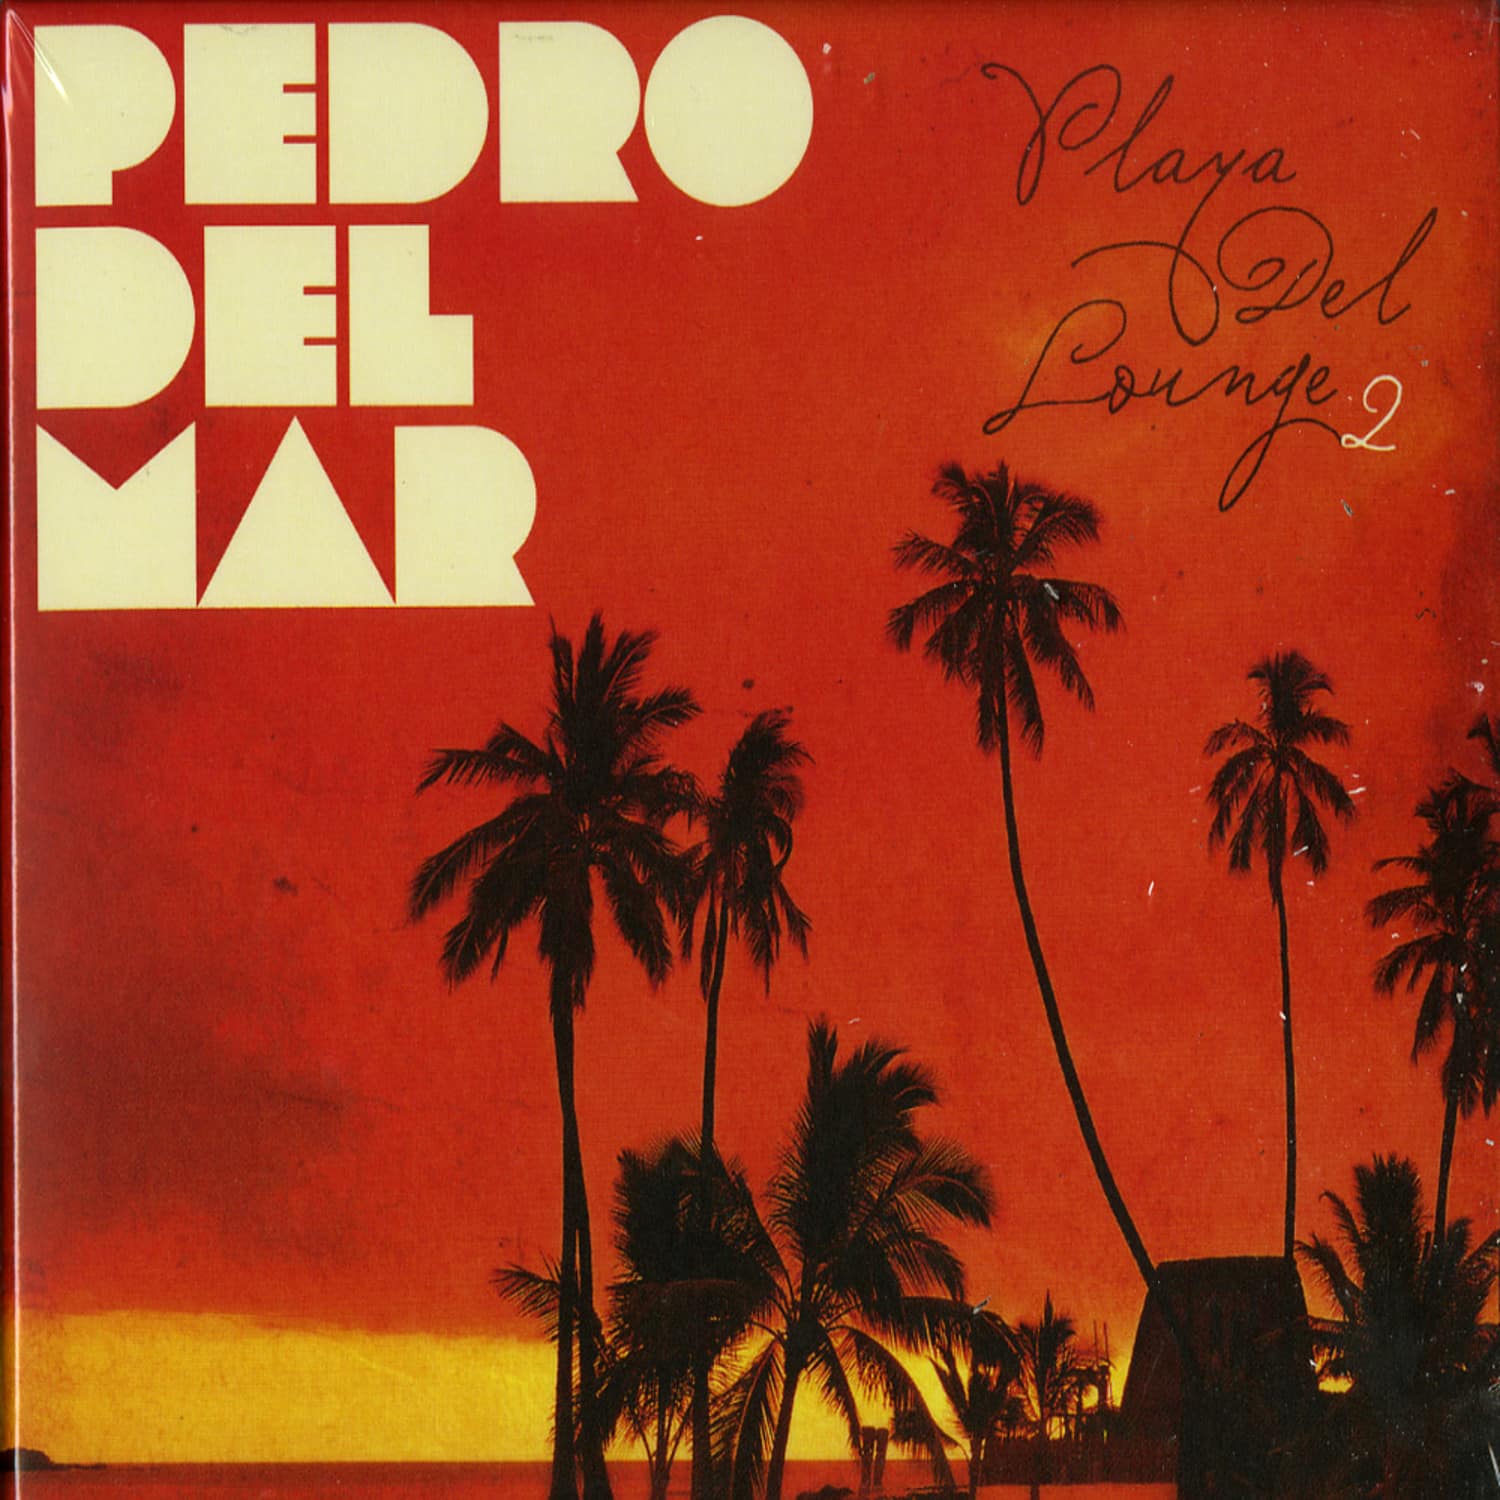 Pedro Del Mar - PLAYA DEL LOUNGE VOL. 2 